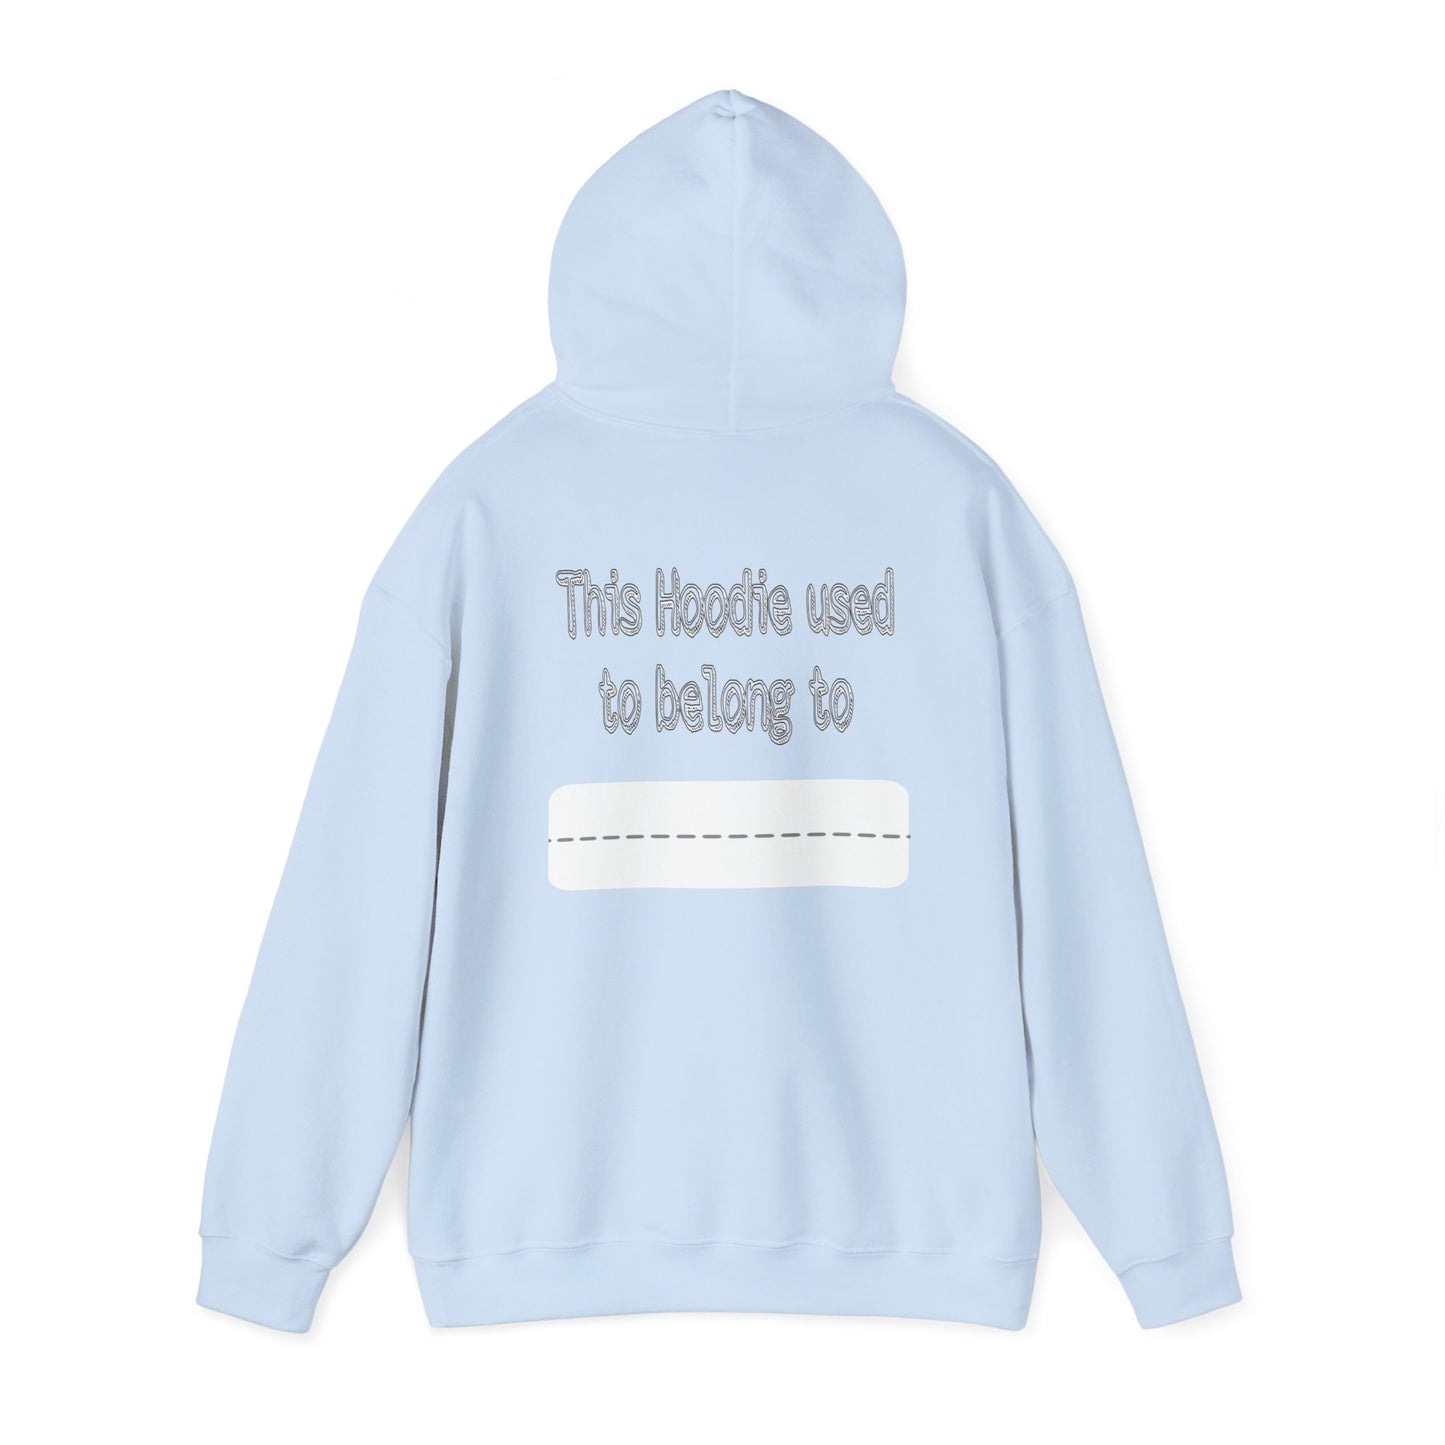 Yoinked Hoodie Unisex Heavy Blend™ Hooded Sweatshirt